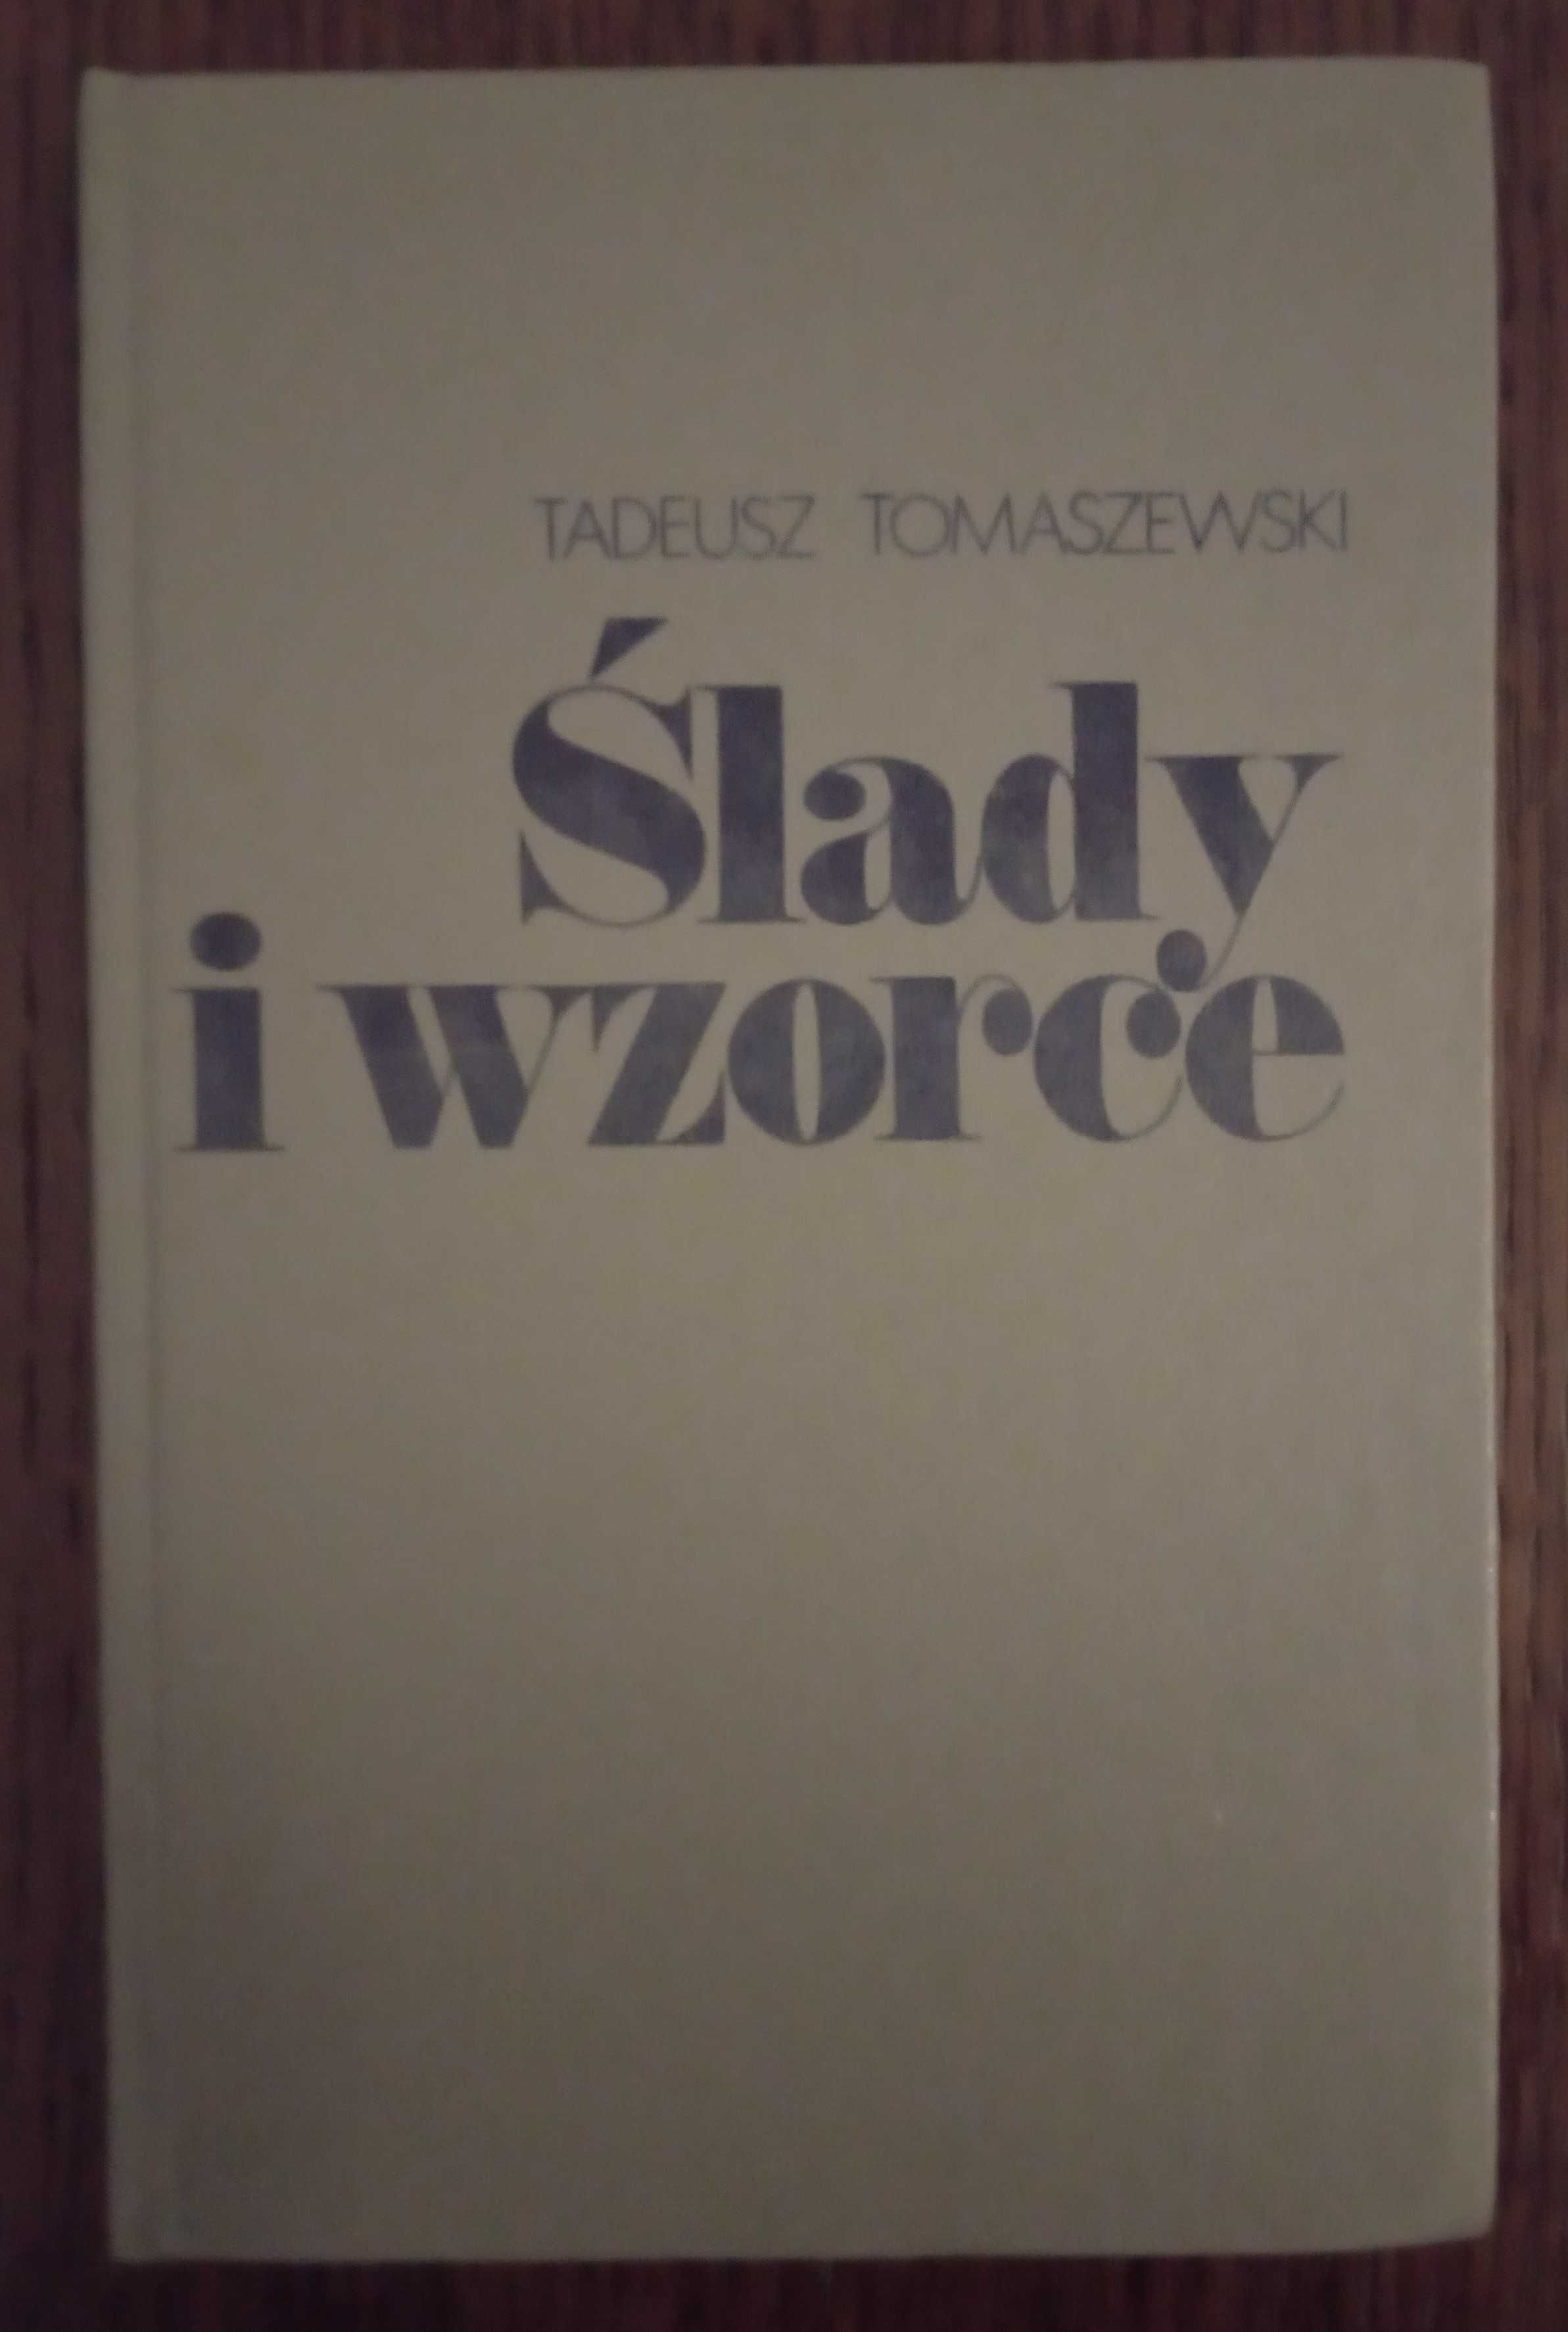 Ślady i wzorce - Tadeusz Tomaszewski